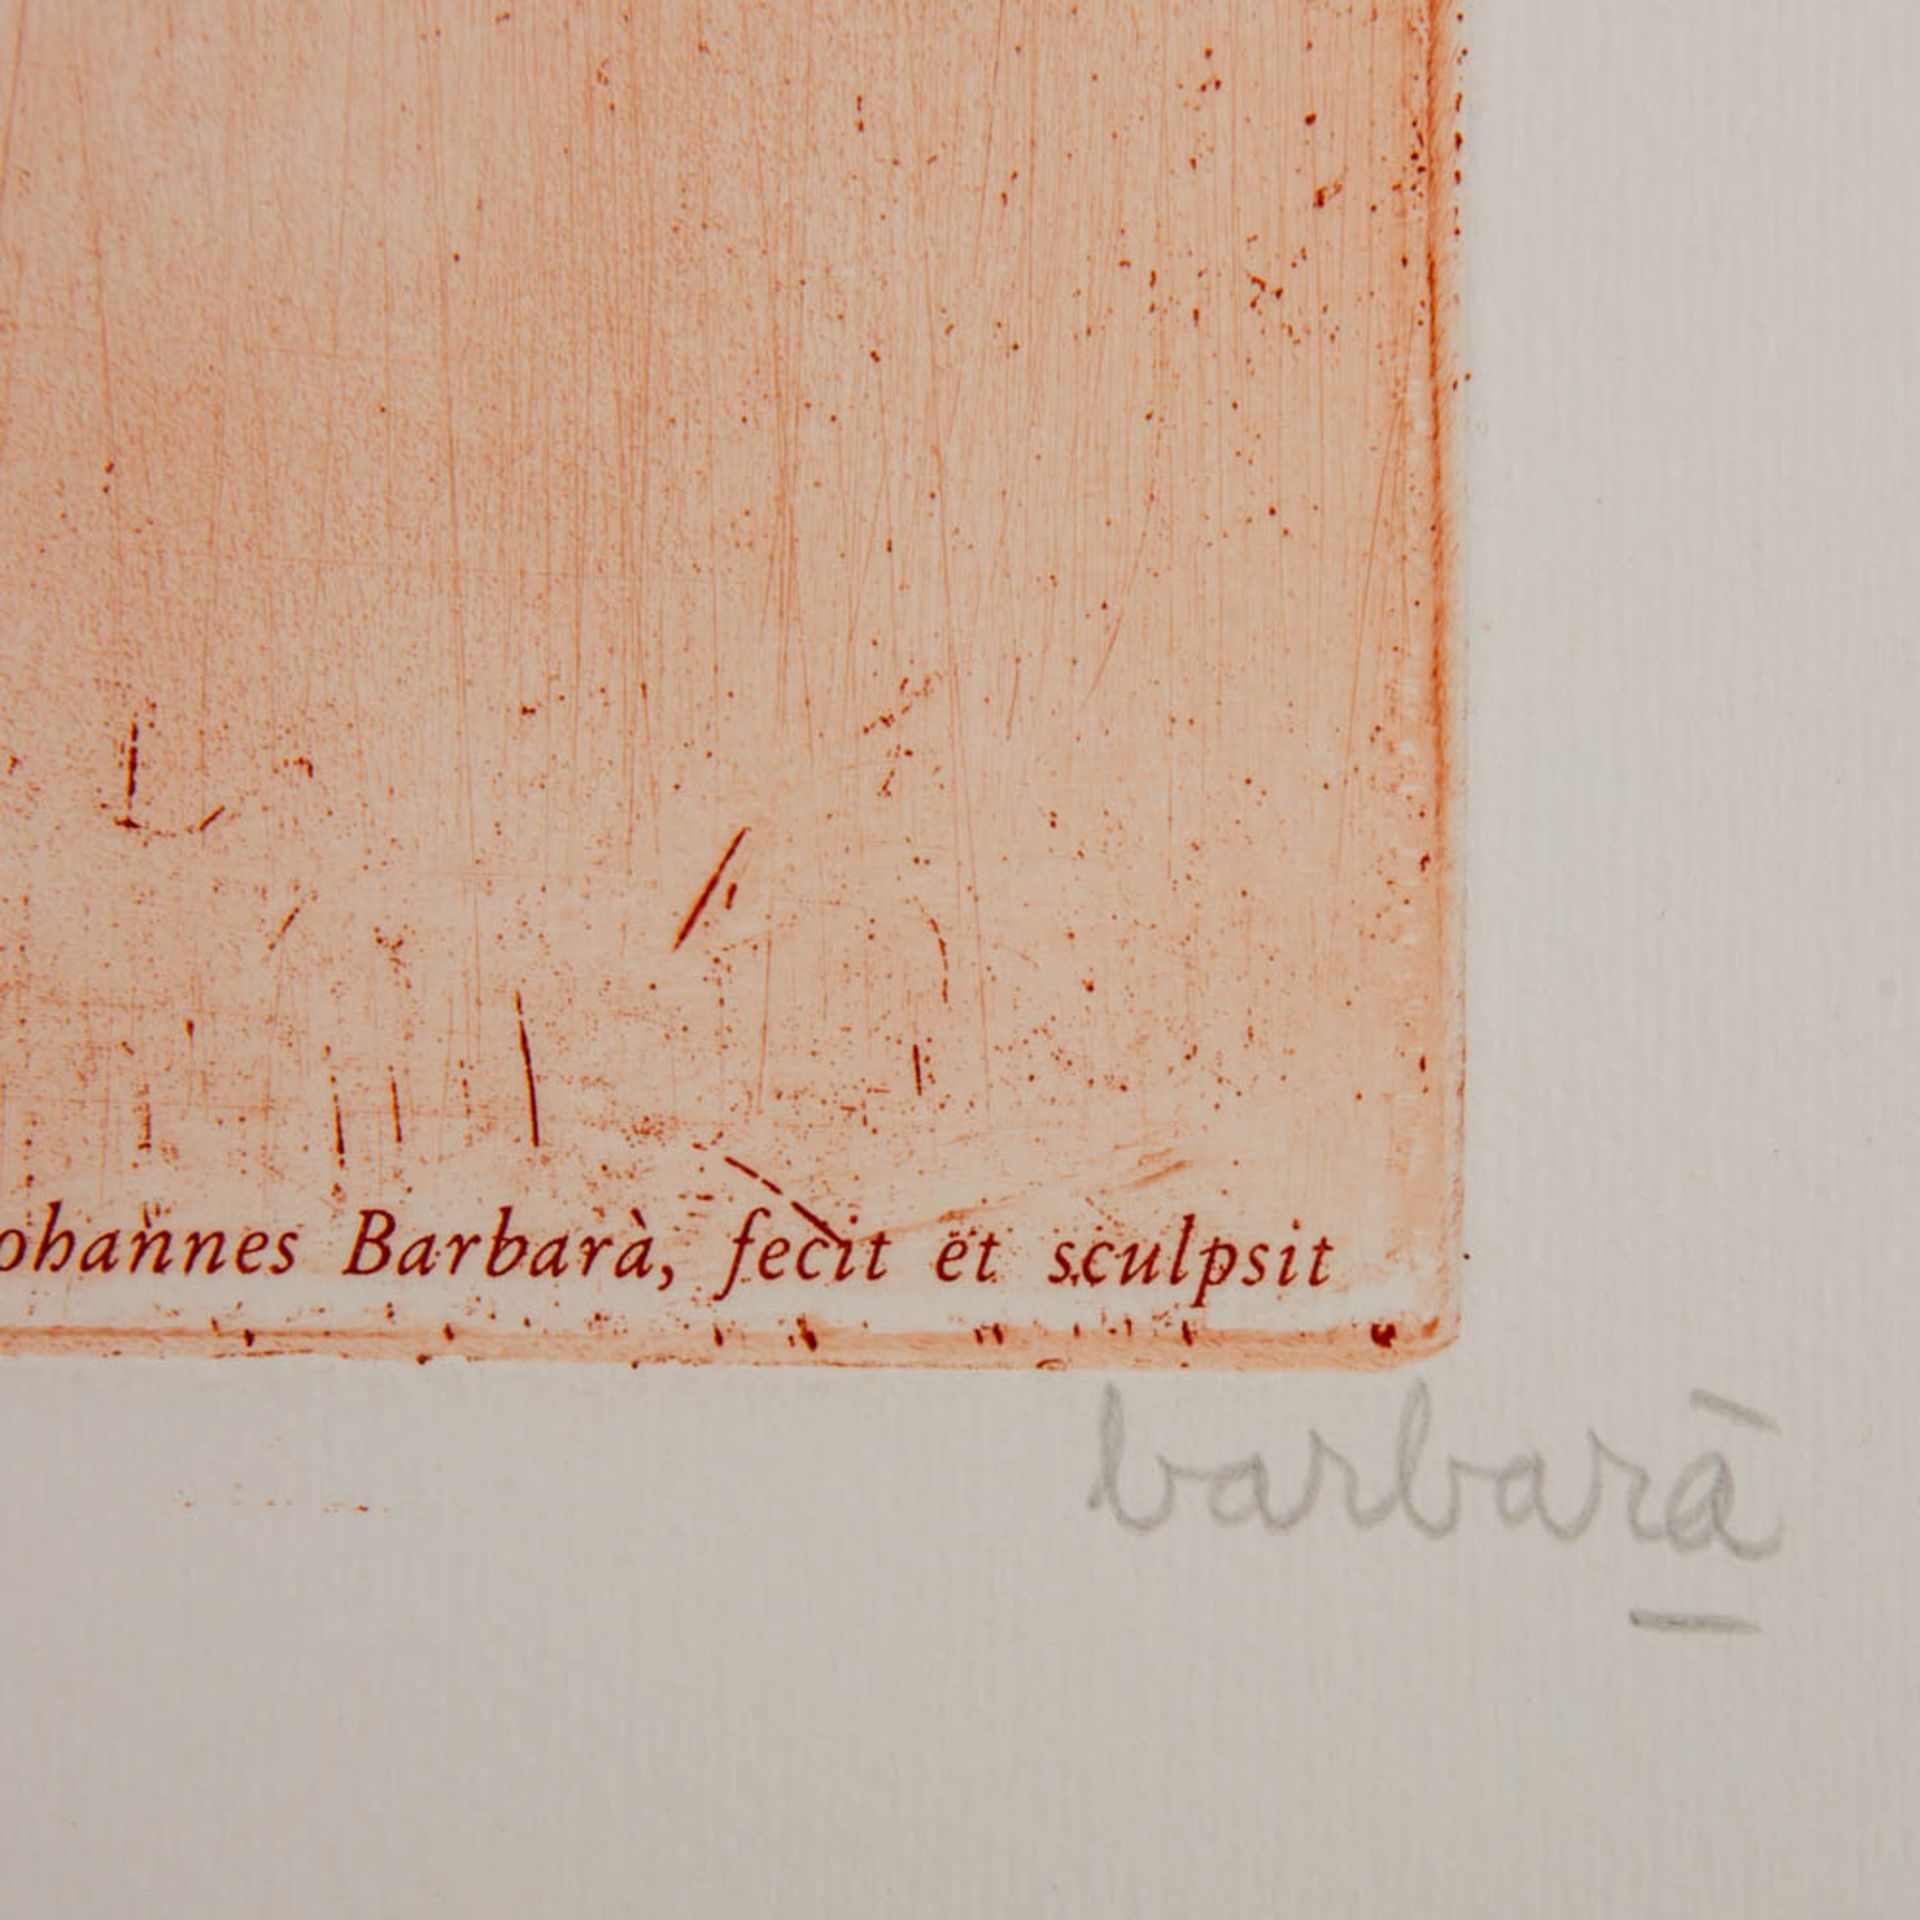 BARBARÀ, JOAN (1927) "Oskar Kokoschka" 1977 - Bild 3 aus 4